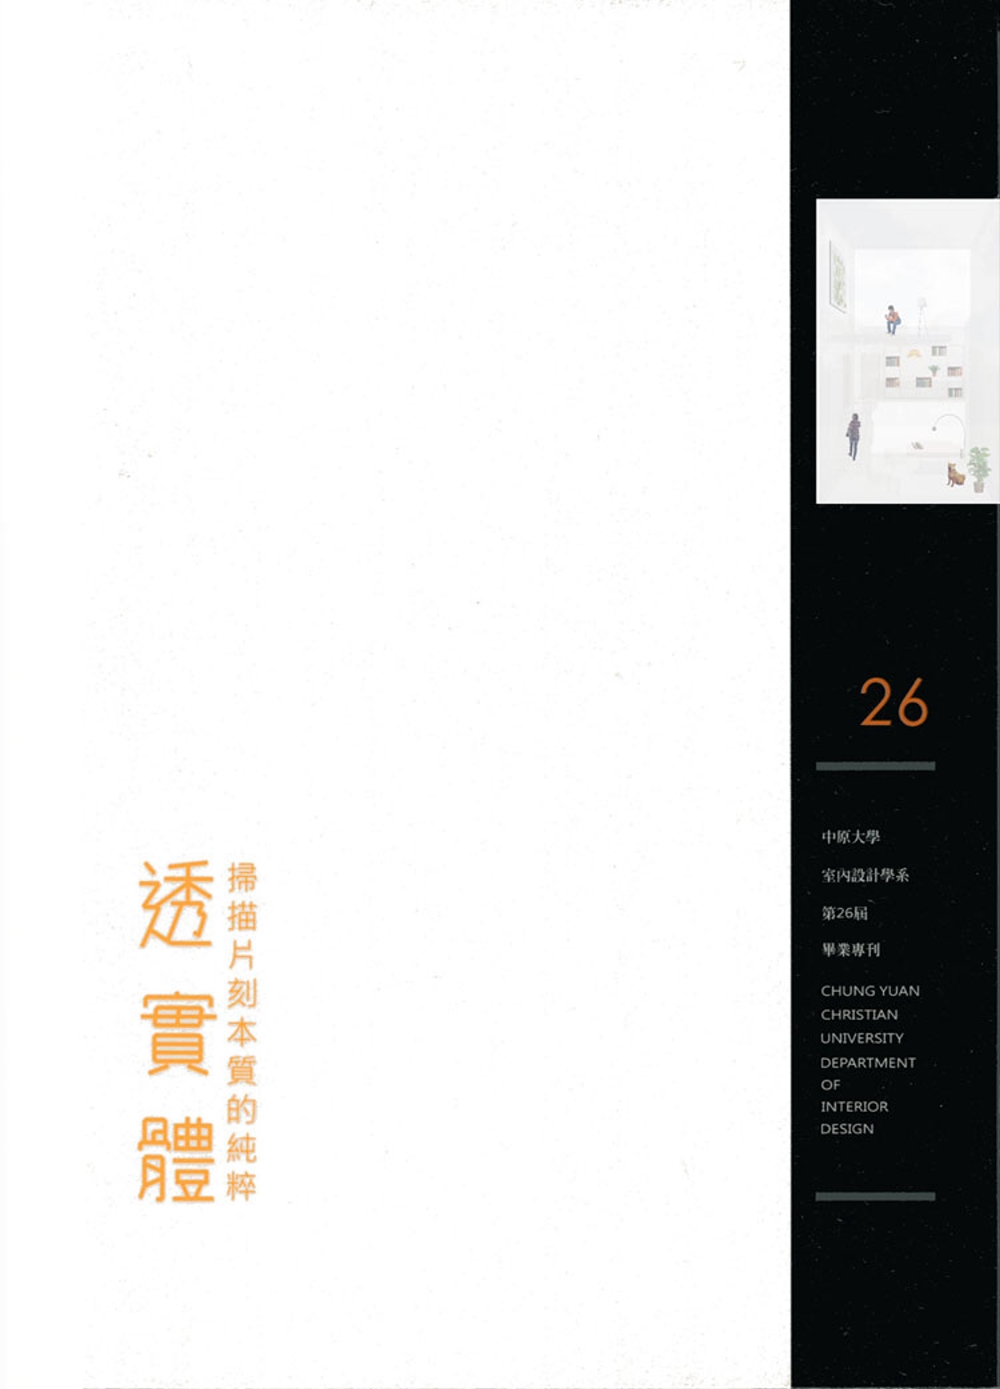 透實體：掃描片刻本質的純粹：中原大學室內設計學系第26屆畢刊